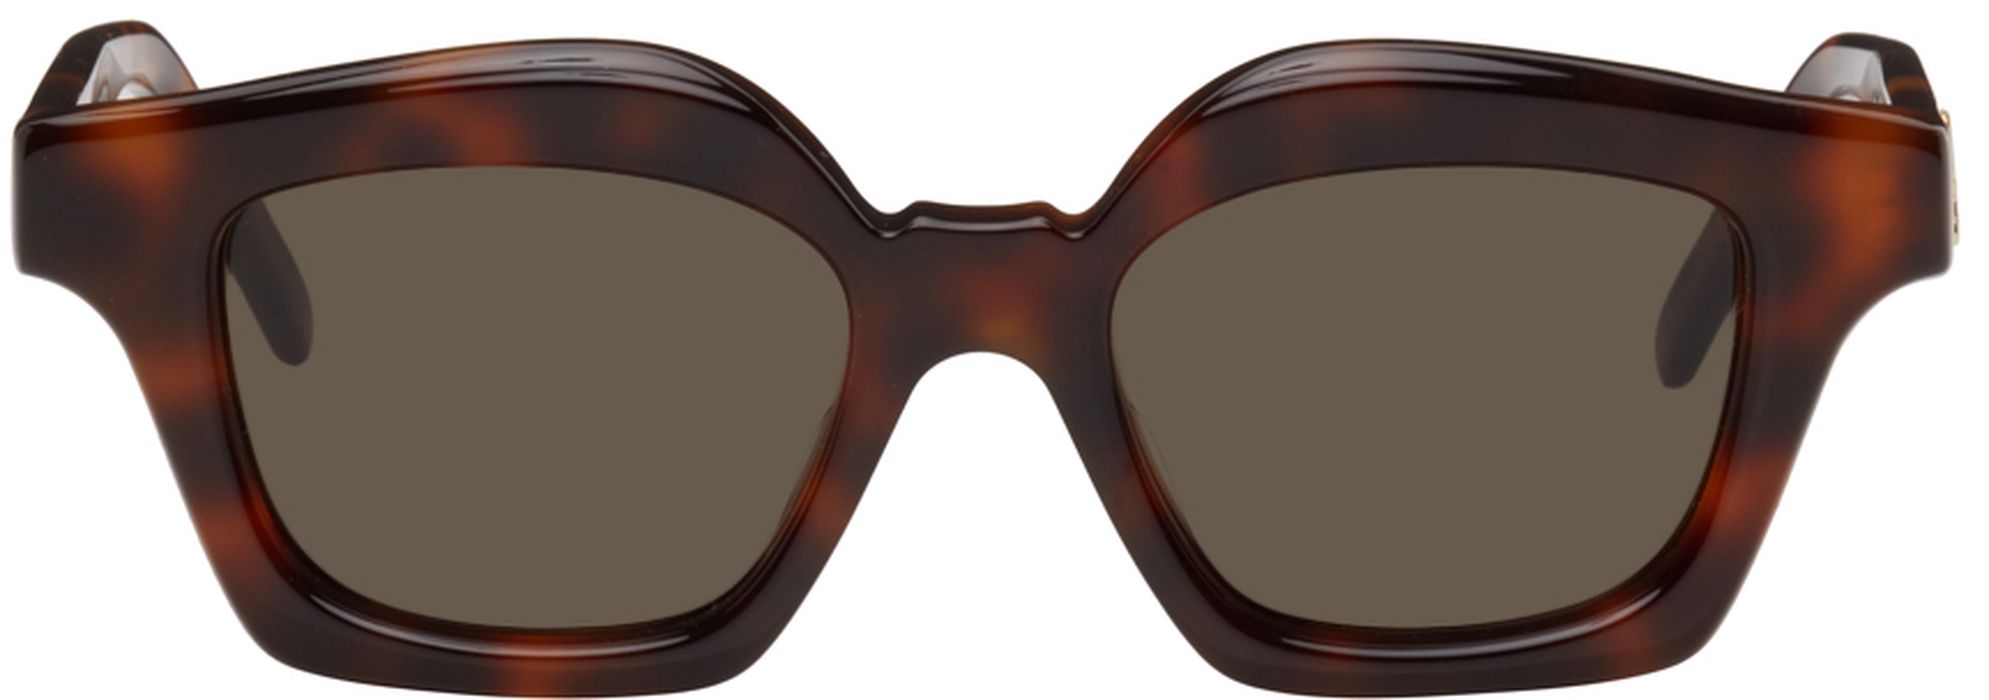 Loewe Tortoiseshell Browline Sunglasses